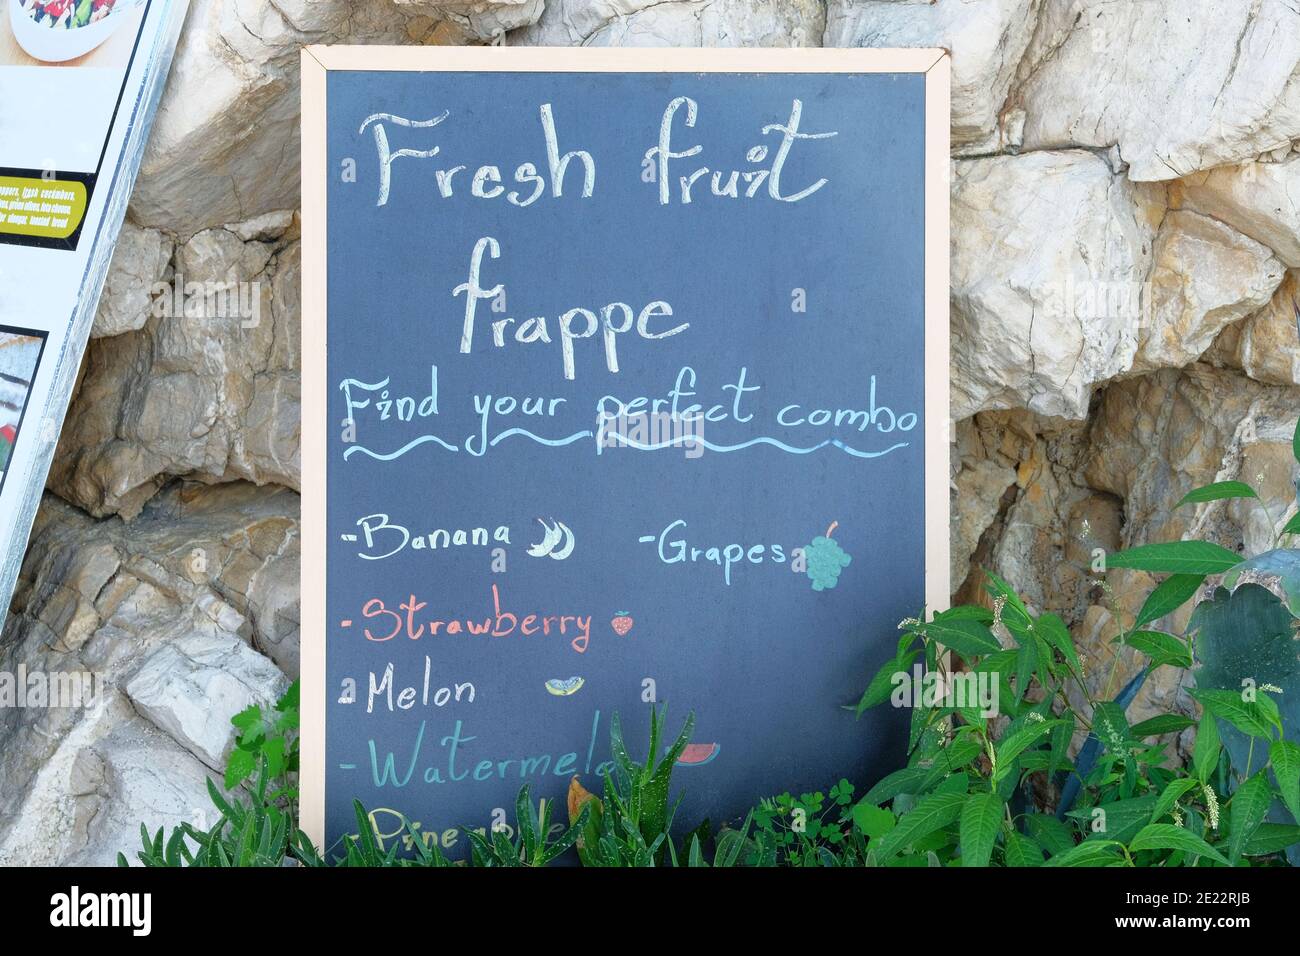 Schilder Menü schwarz Farbe mit einer Inschrift - frisches Obst Frappe. Die Tafel steht in der Nähe des Restaurants am Meeresstrand. Sonniger Tag. Stockfoto